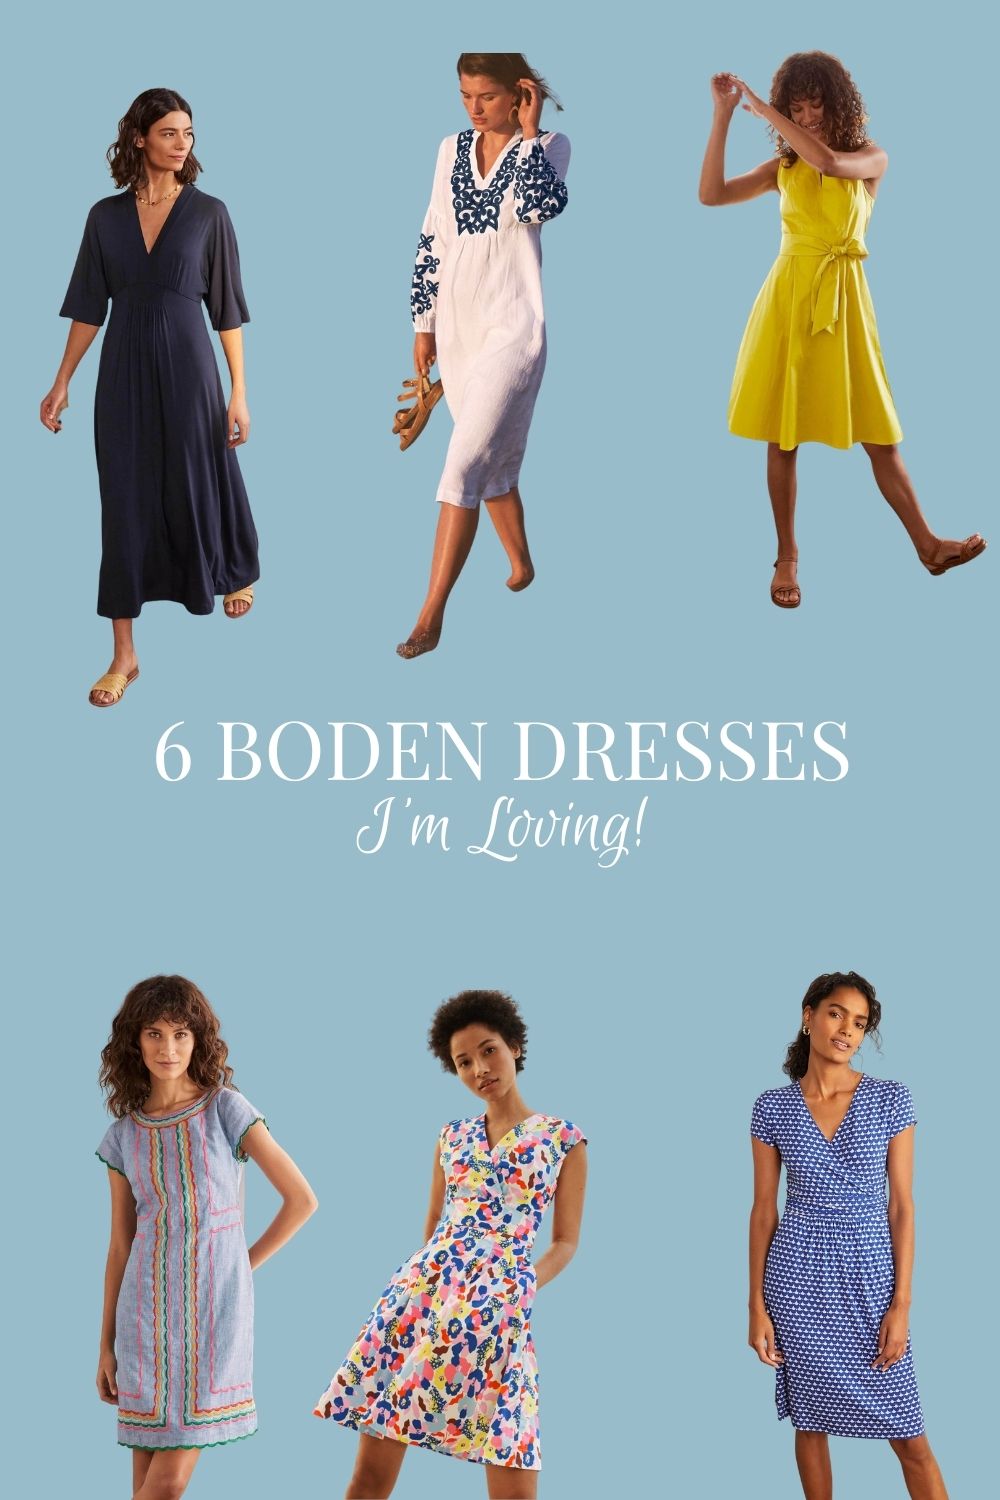 6 Great Boden Dresses - Brooke Spater Design